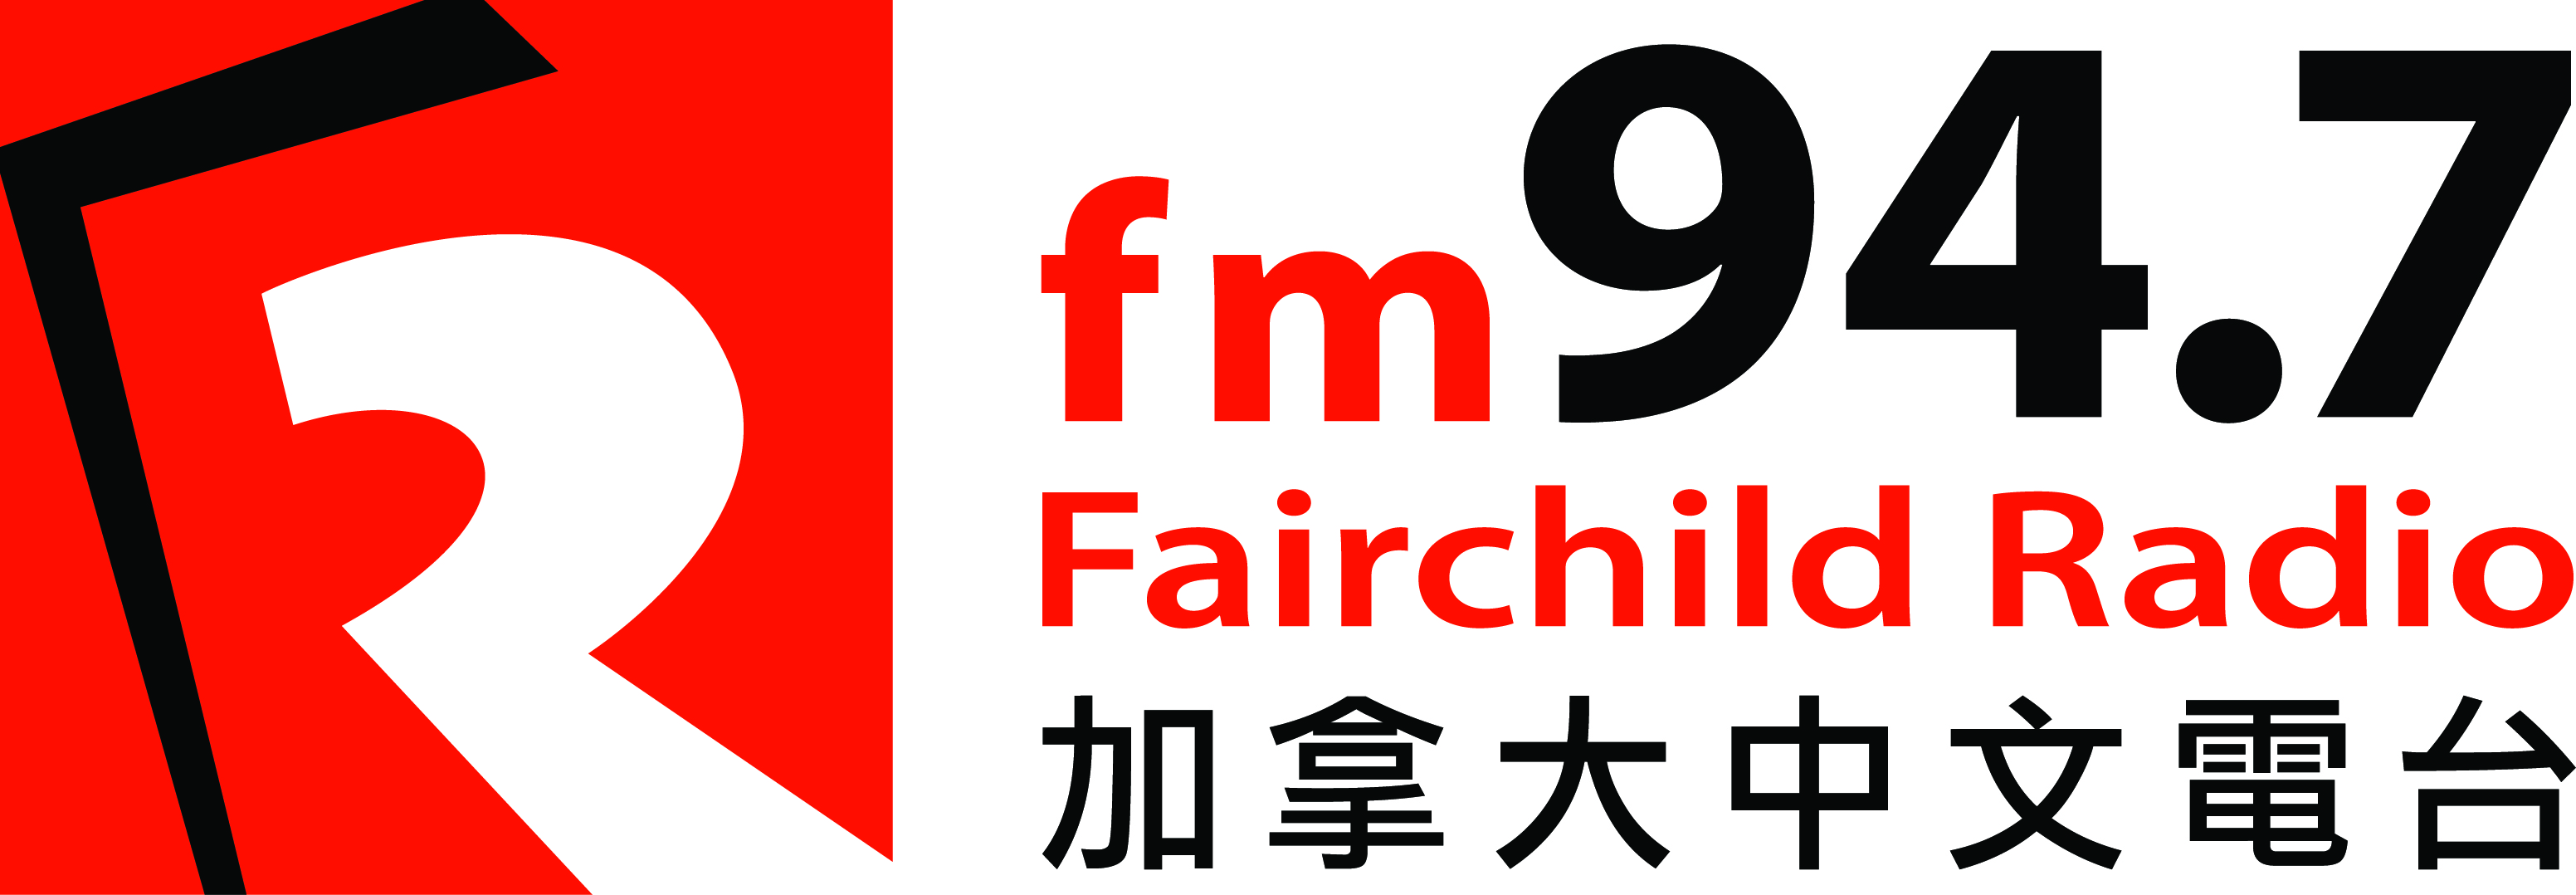 Fairchild 94.7